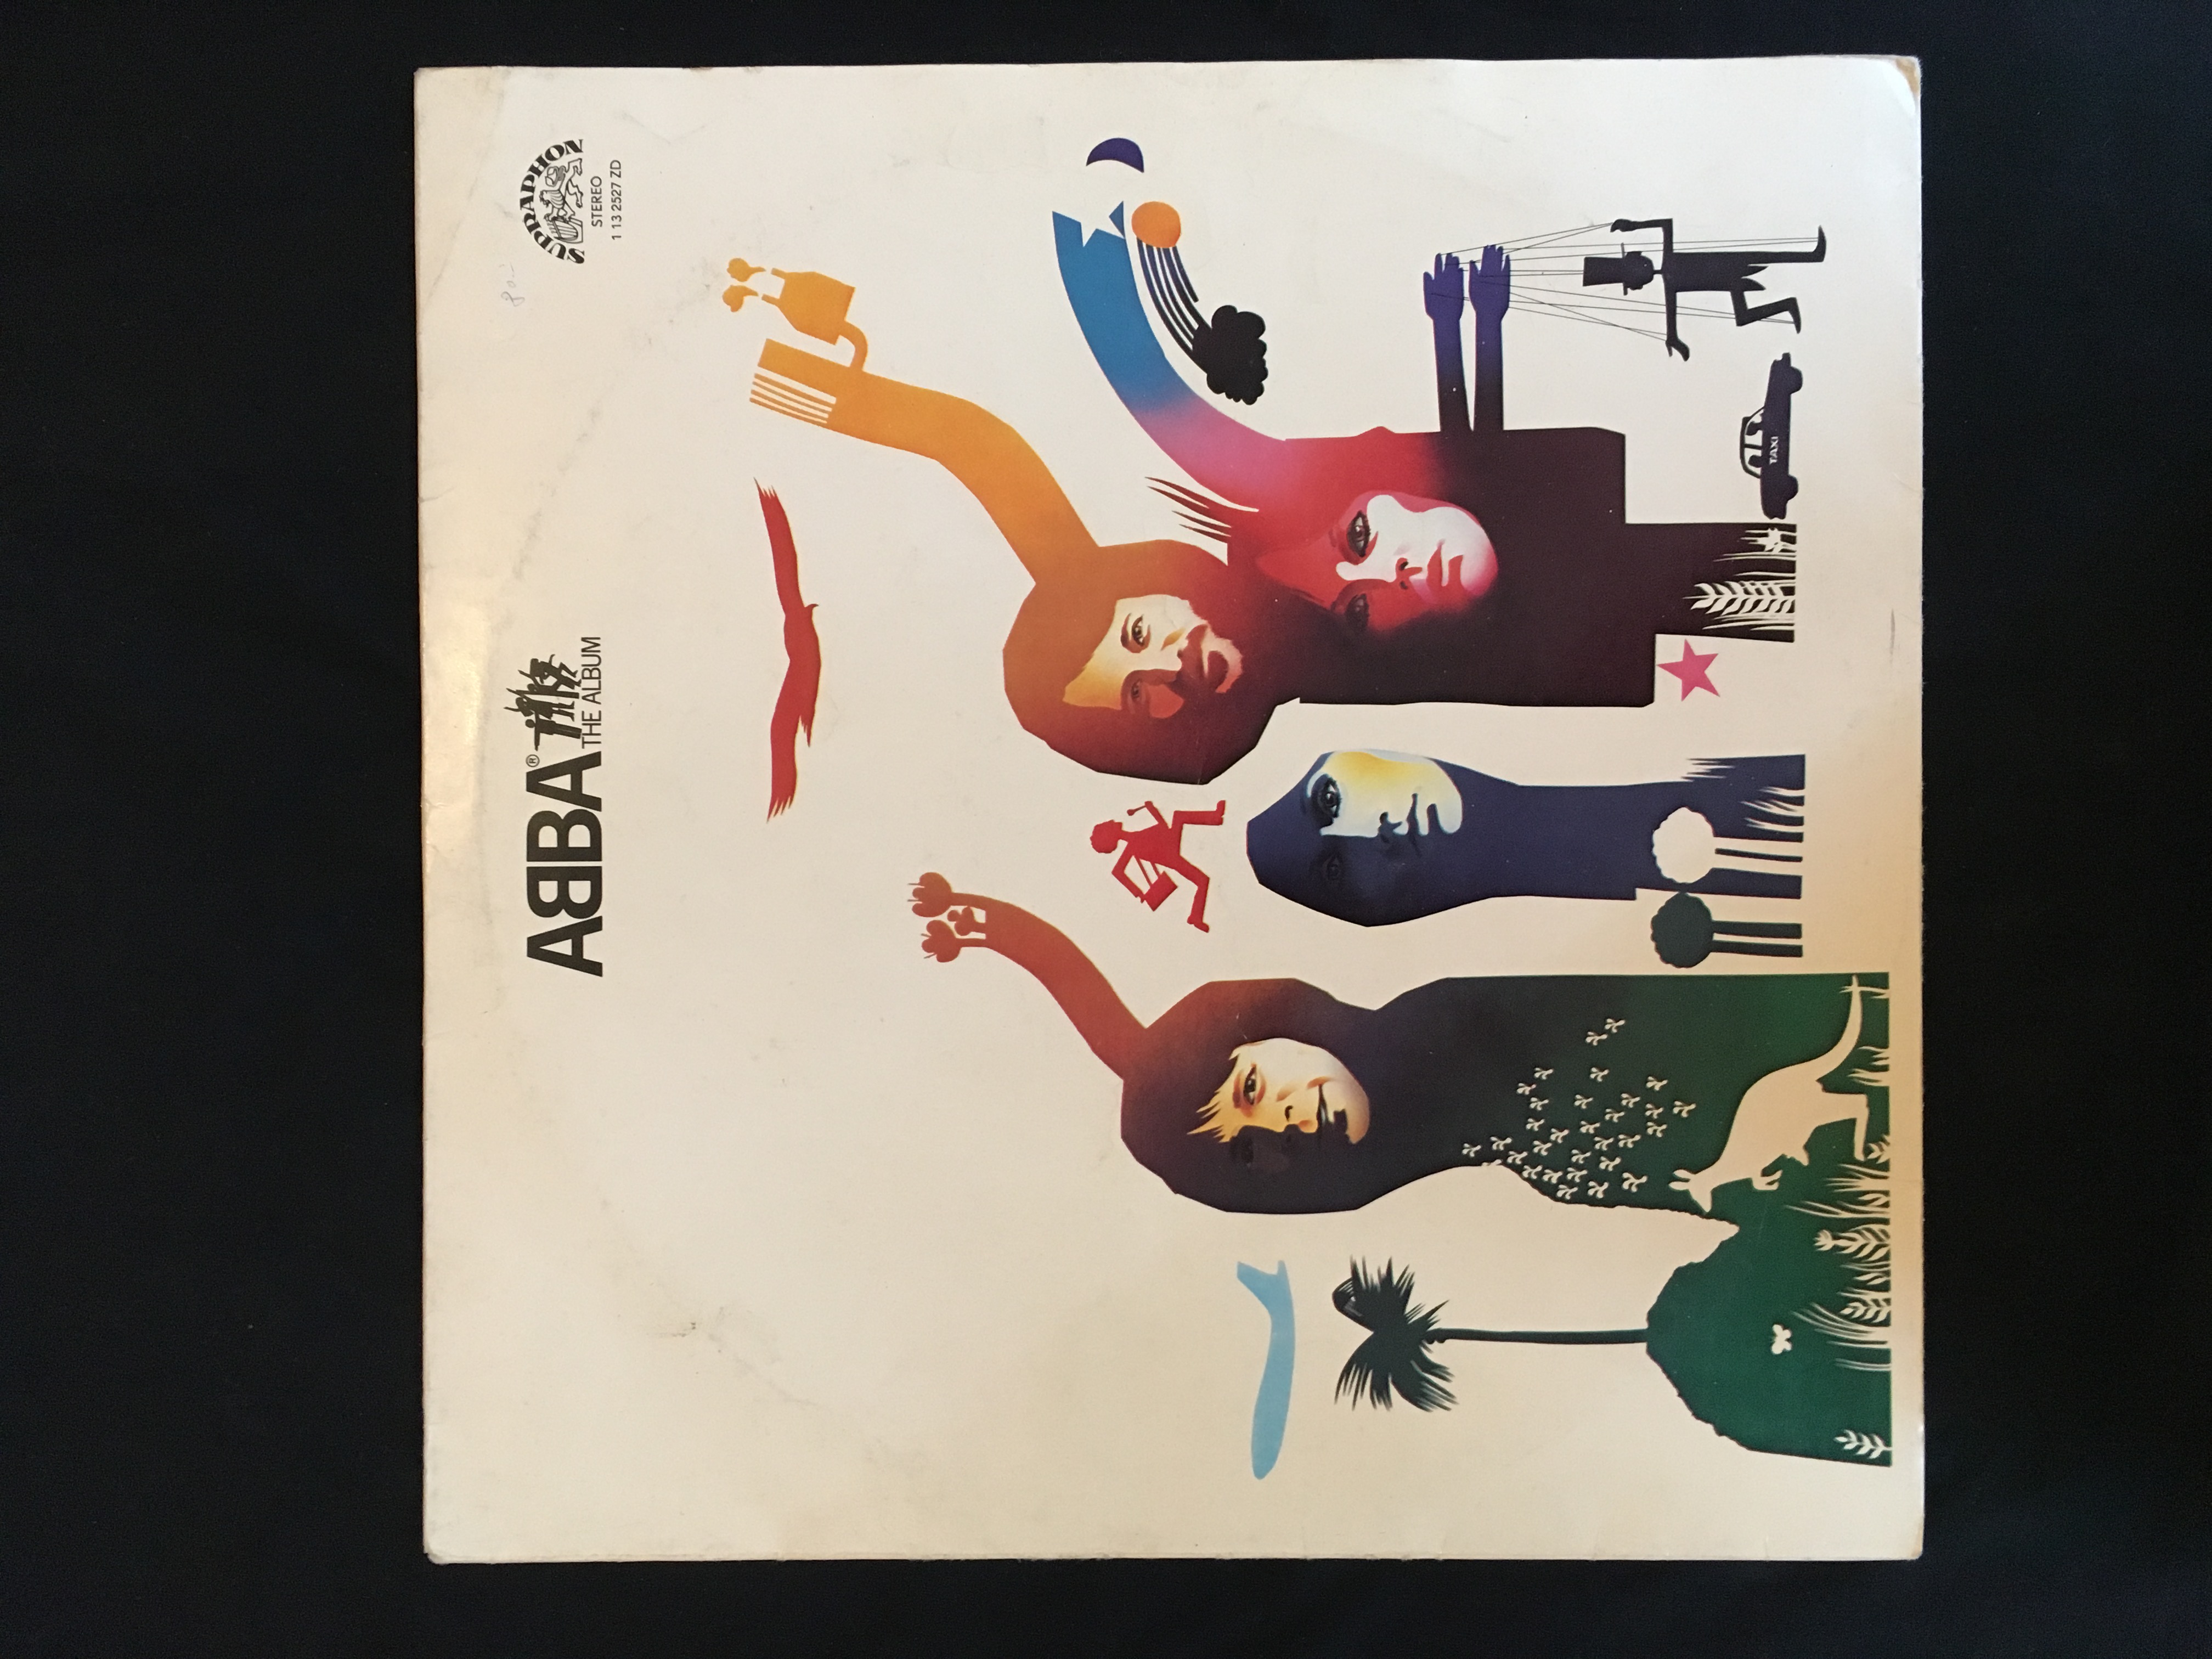 ABBA-The album